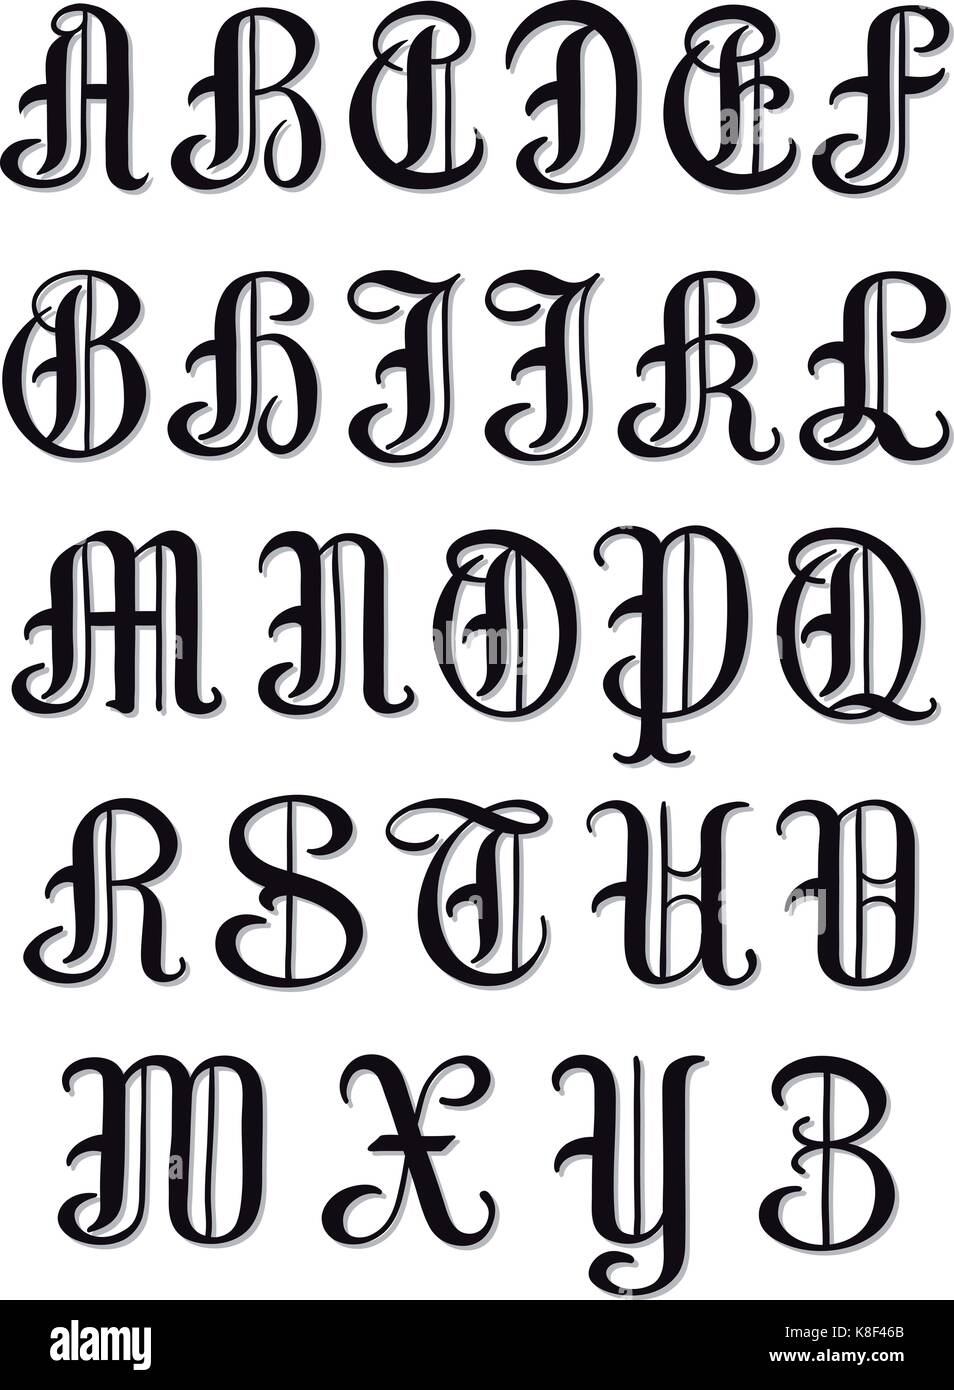 Completo set di caratteri maiuscoli dell'alfabeto lettere nel round vintage caratteri serif, illustrazione isolato su bianco Illustrazione Vettoriale